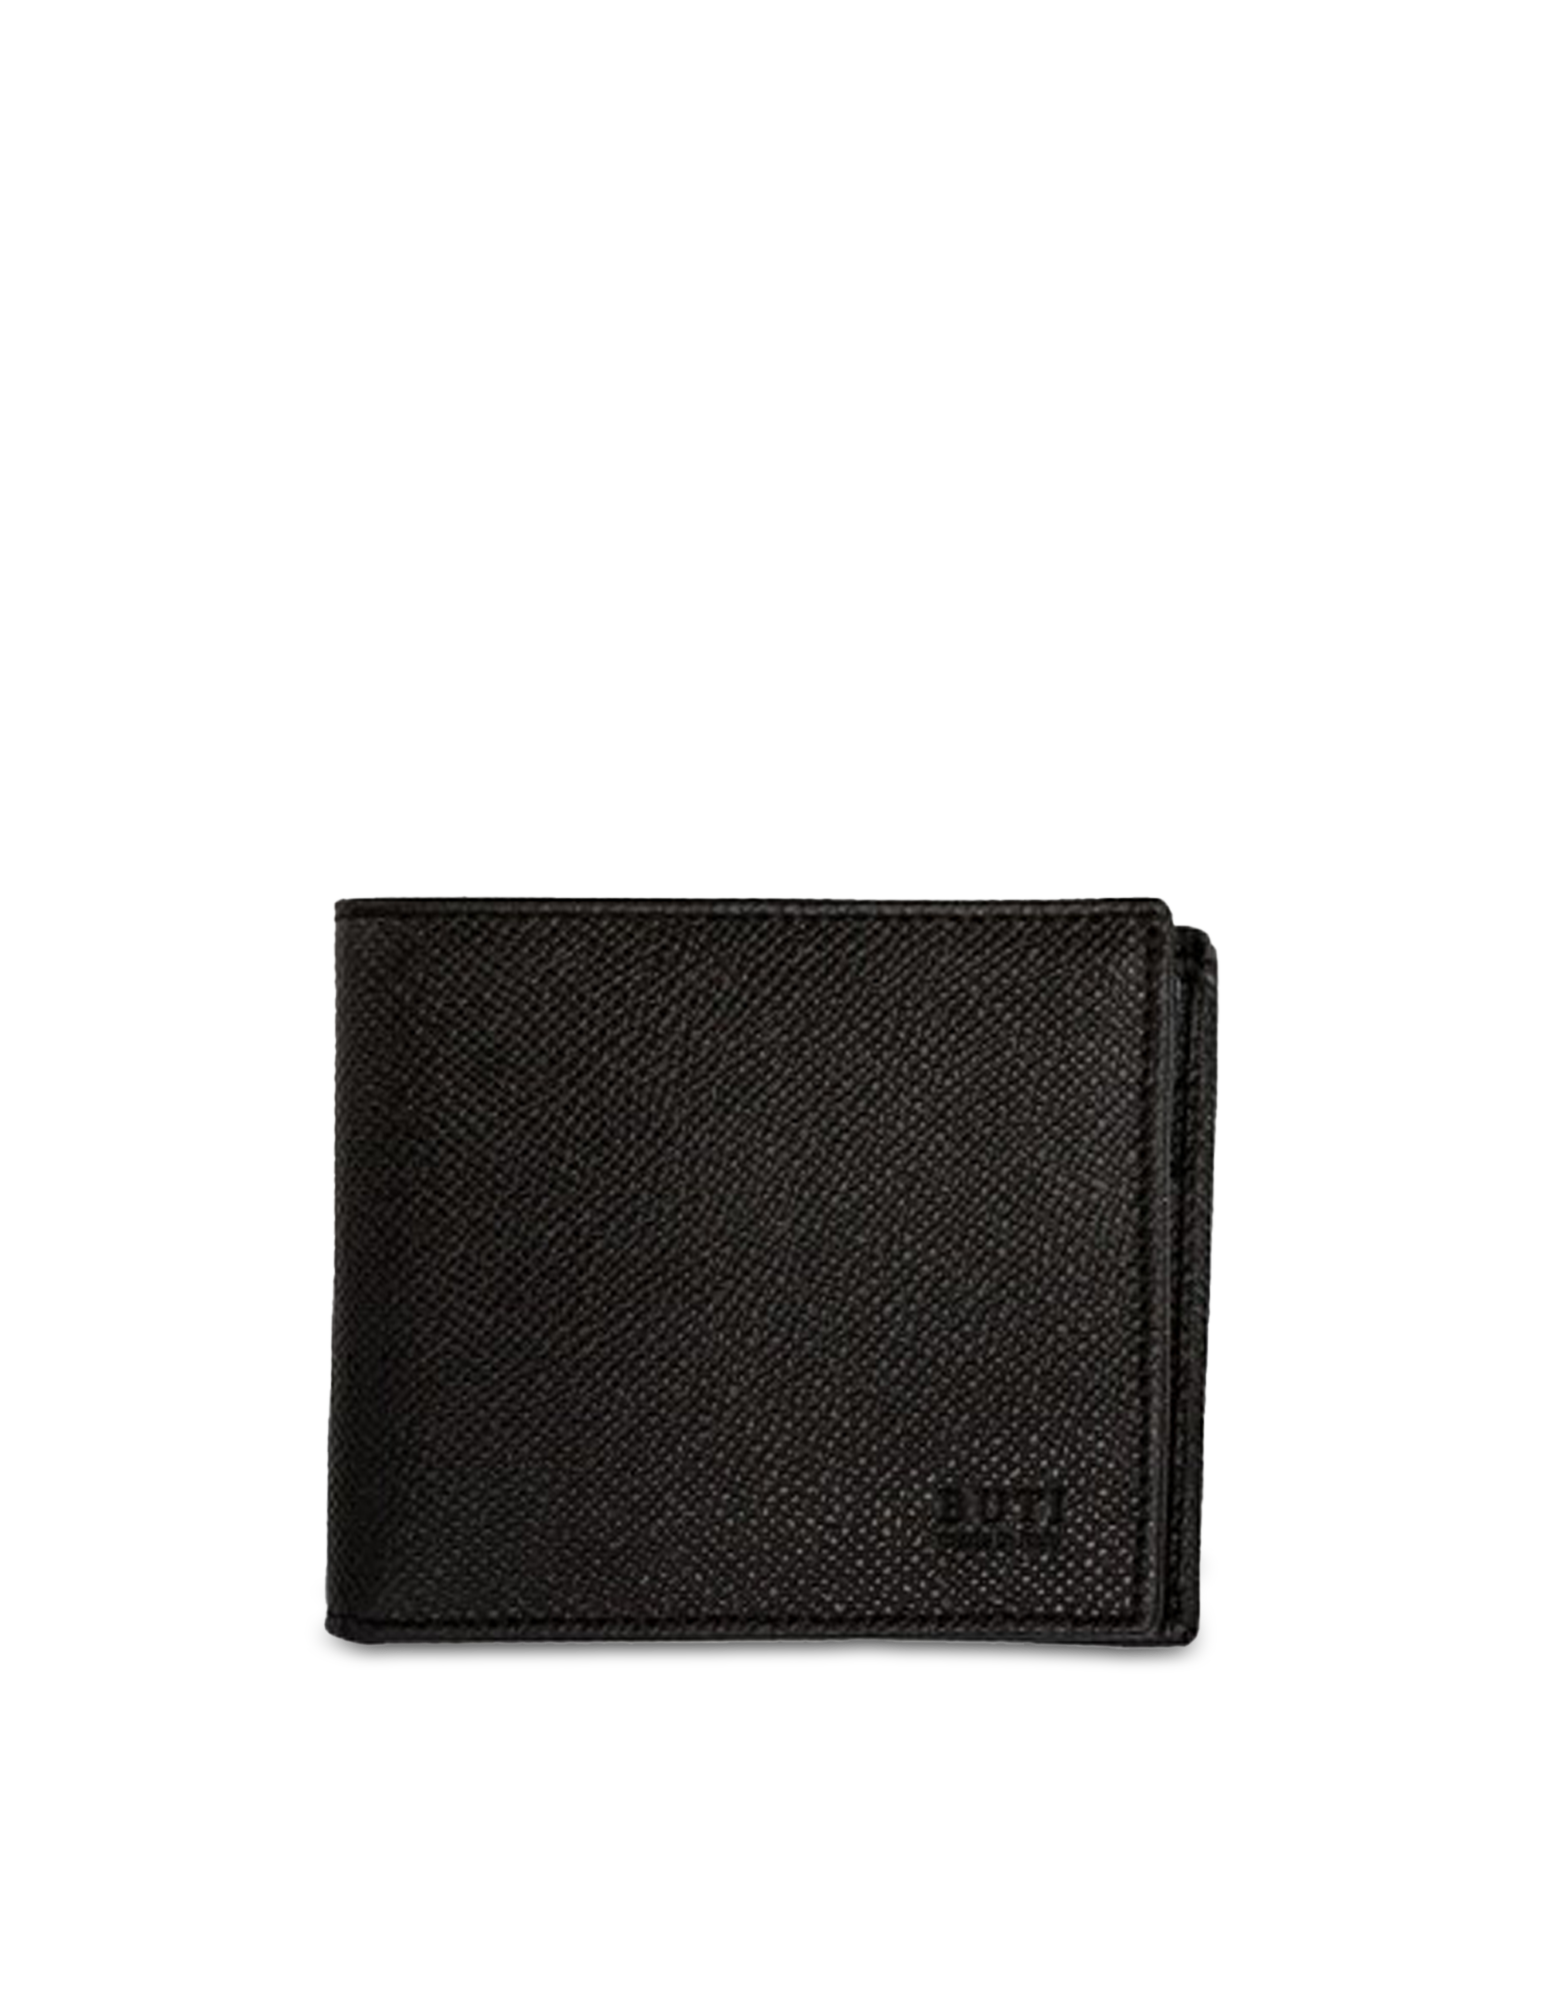 Buti Squared Saffiano Leather Men's Wallet